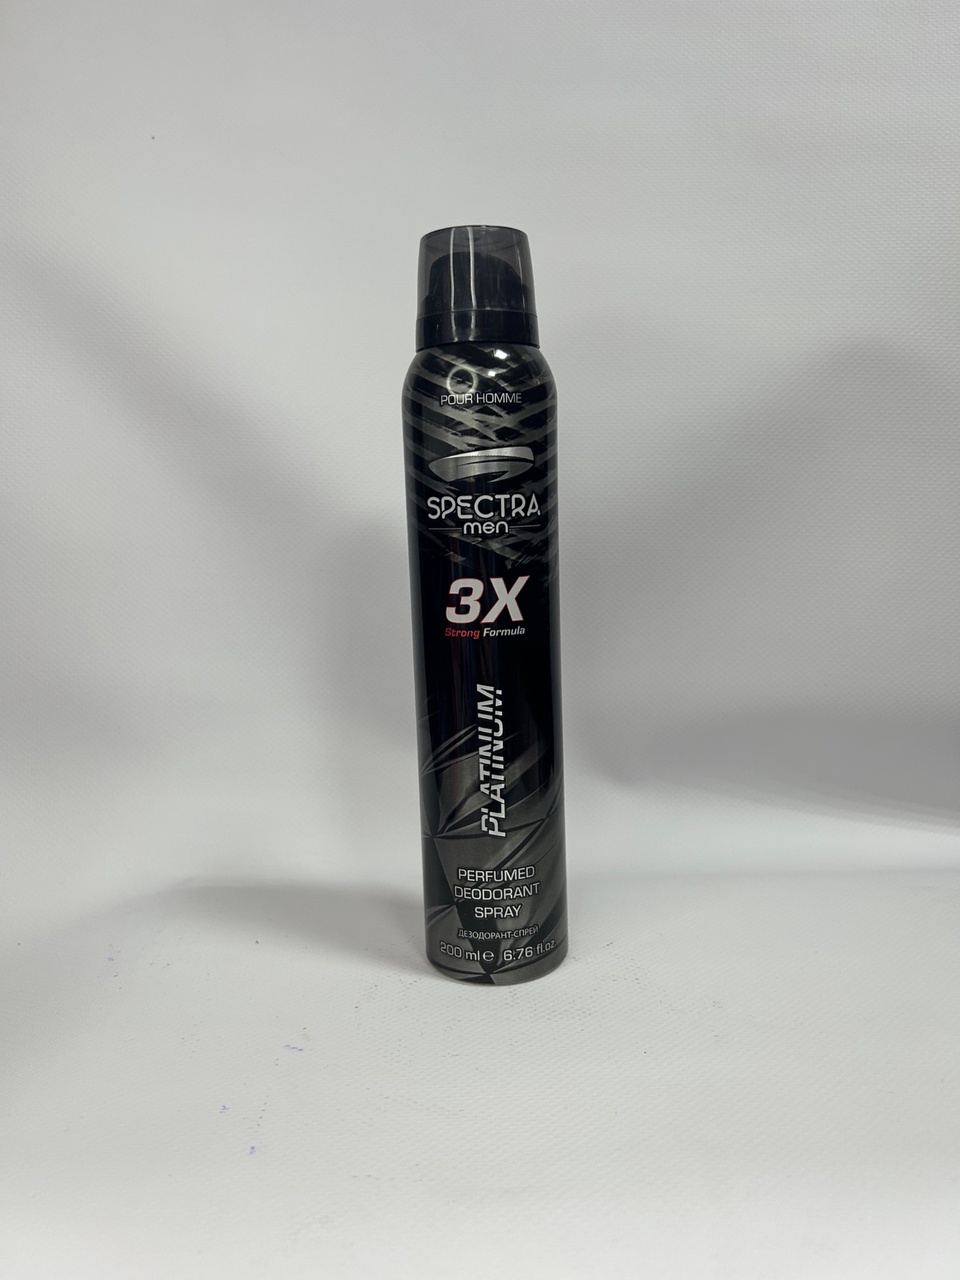 Дезодорант спрей мужской SPECTRA Platinium 200 мл - 200 ₽, заказать онлайн.